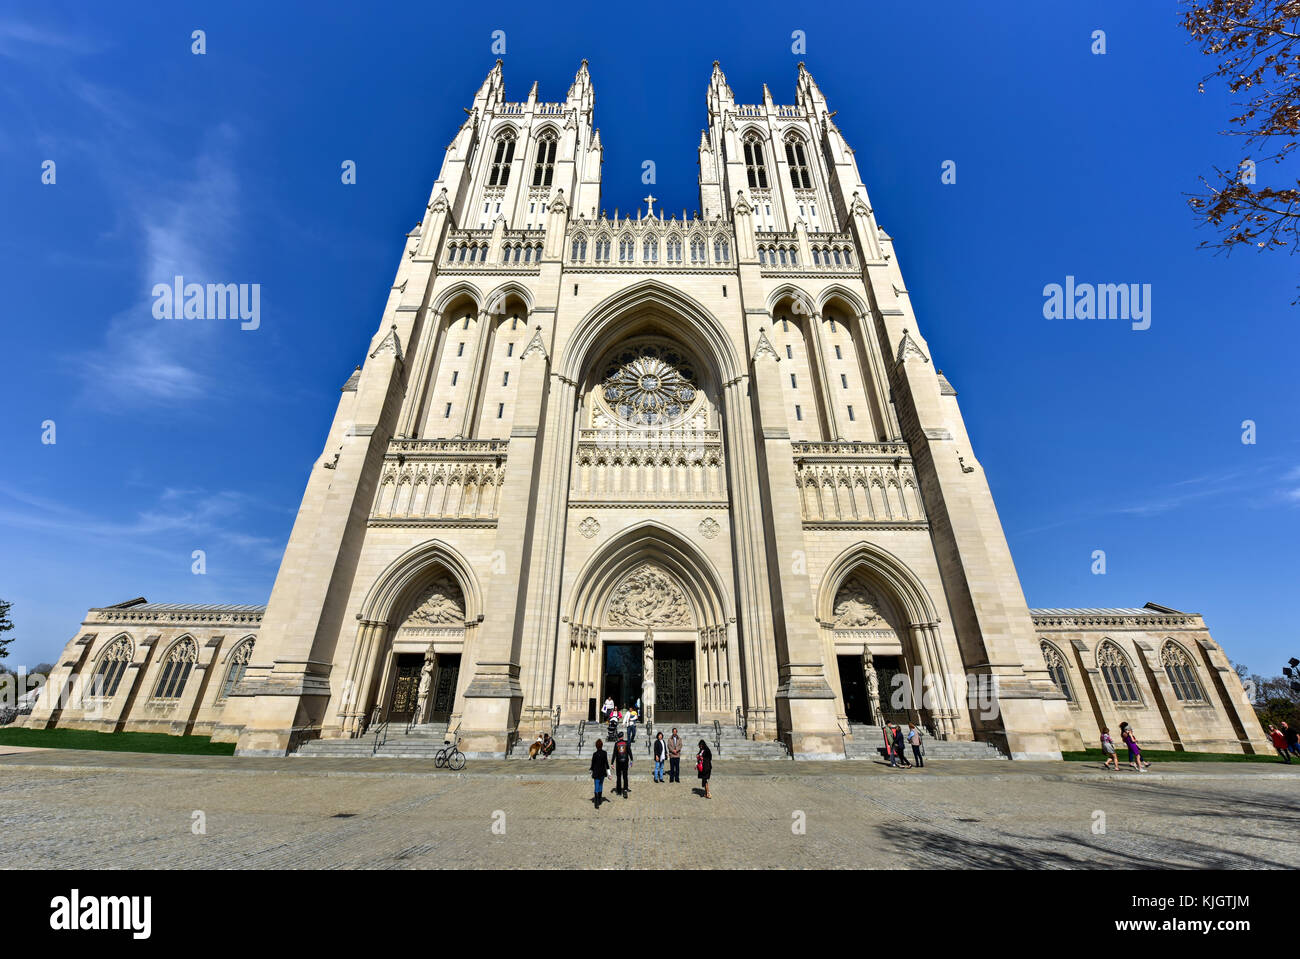 Washington, D.C. - 12 avril, 2015 : la cathédrale nationale de Washington, une cathédrale de l'église située à Washington, D.C. Banque D'Images